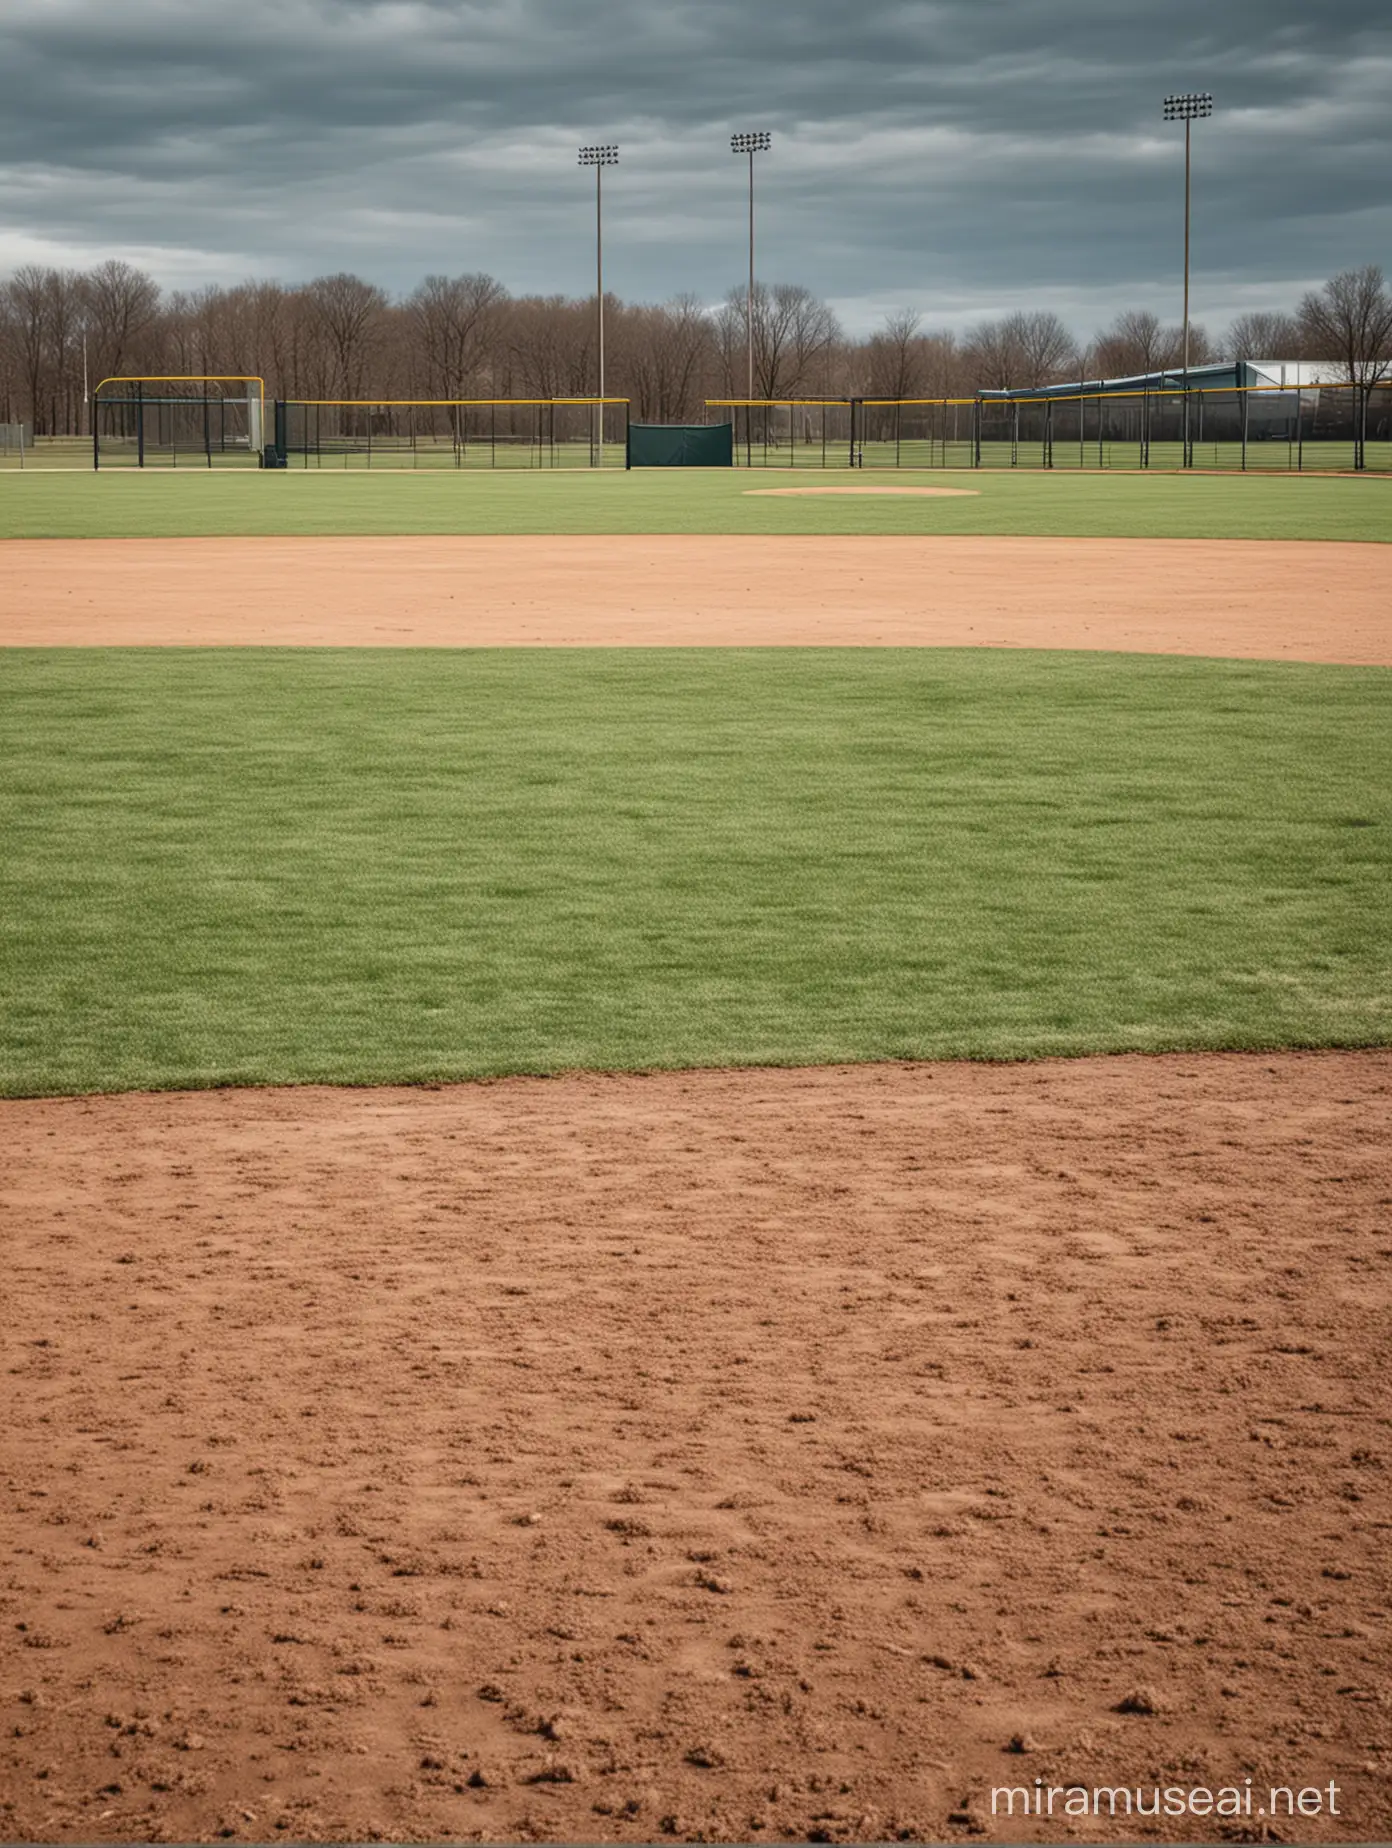 baseball field, no people


